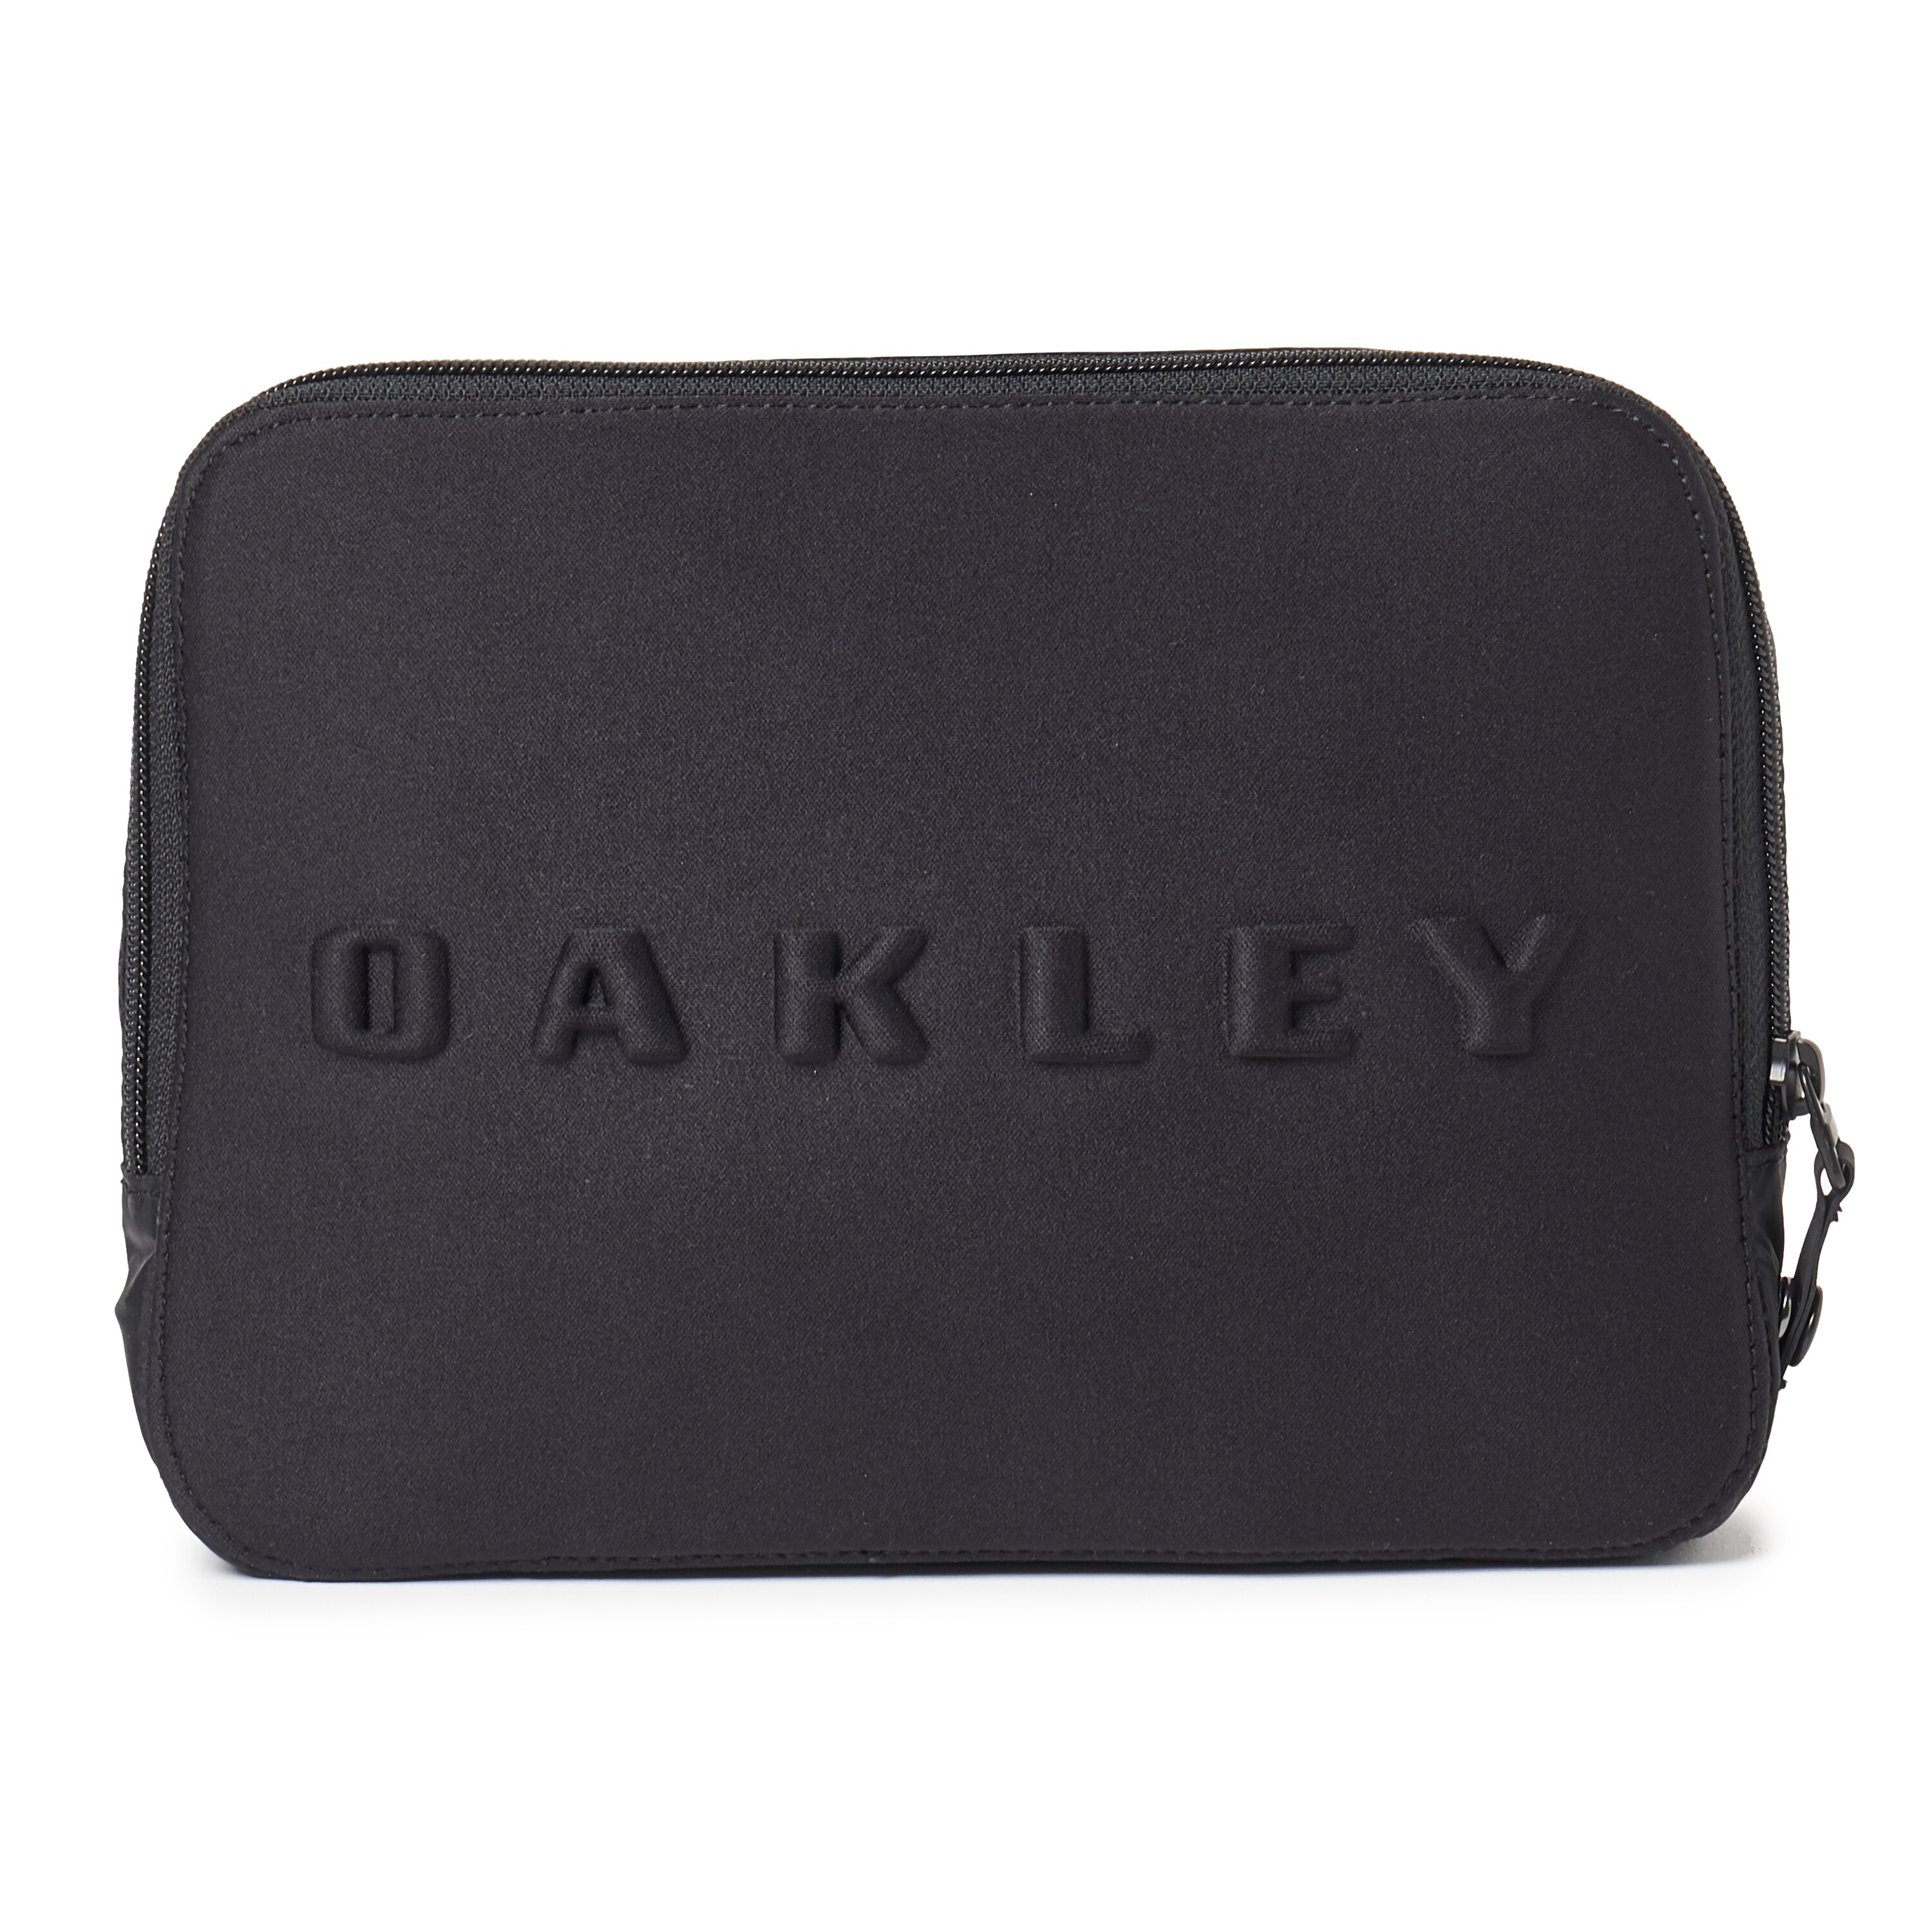 oakley packable